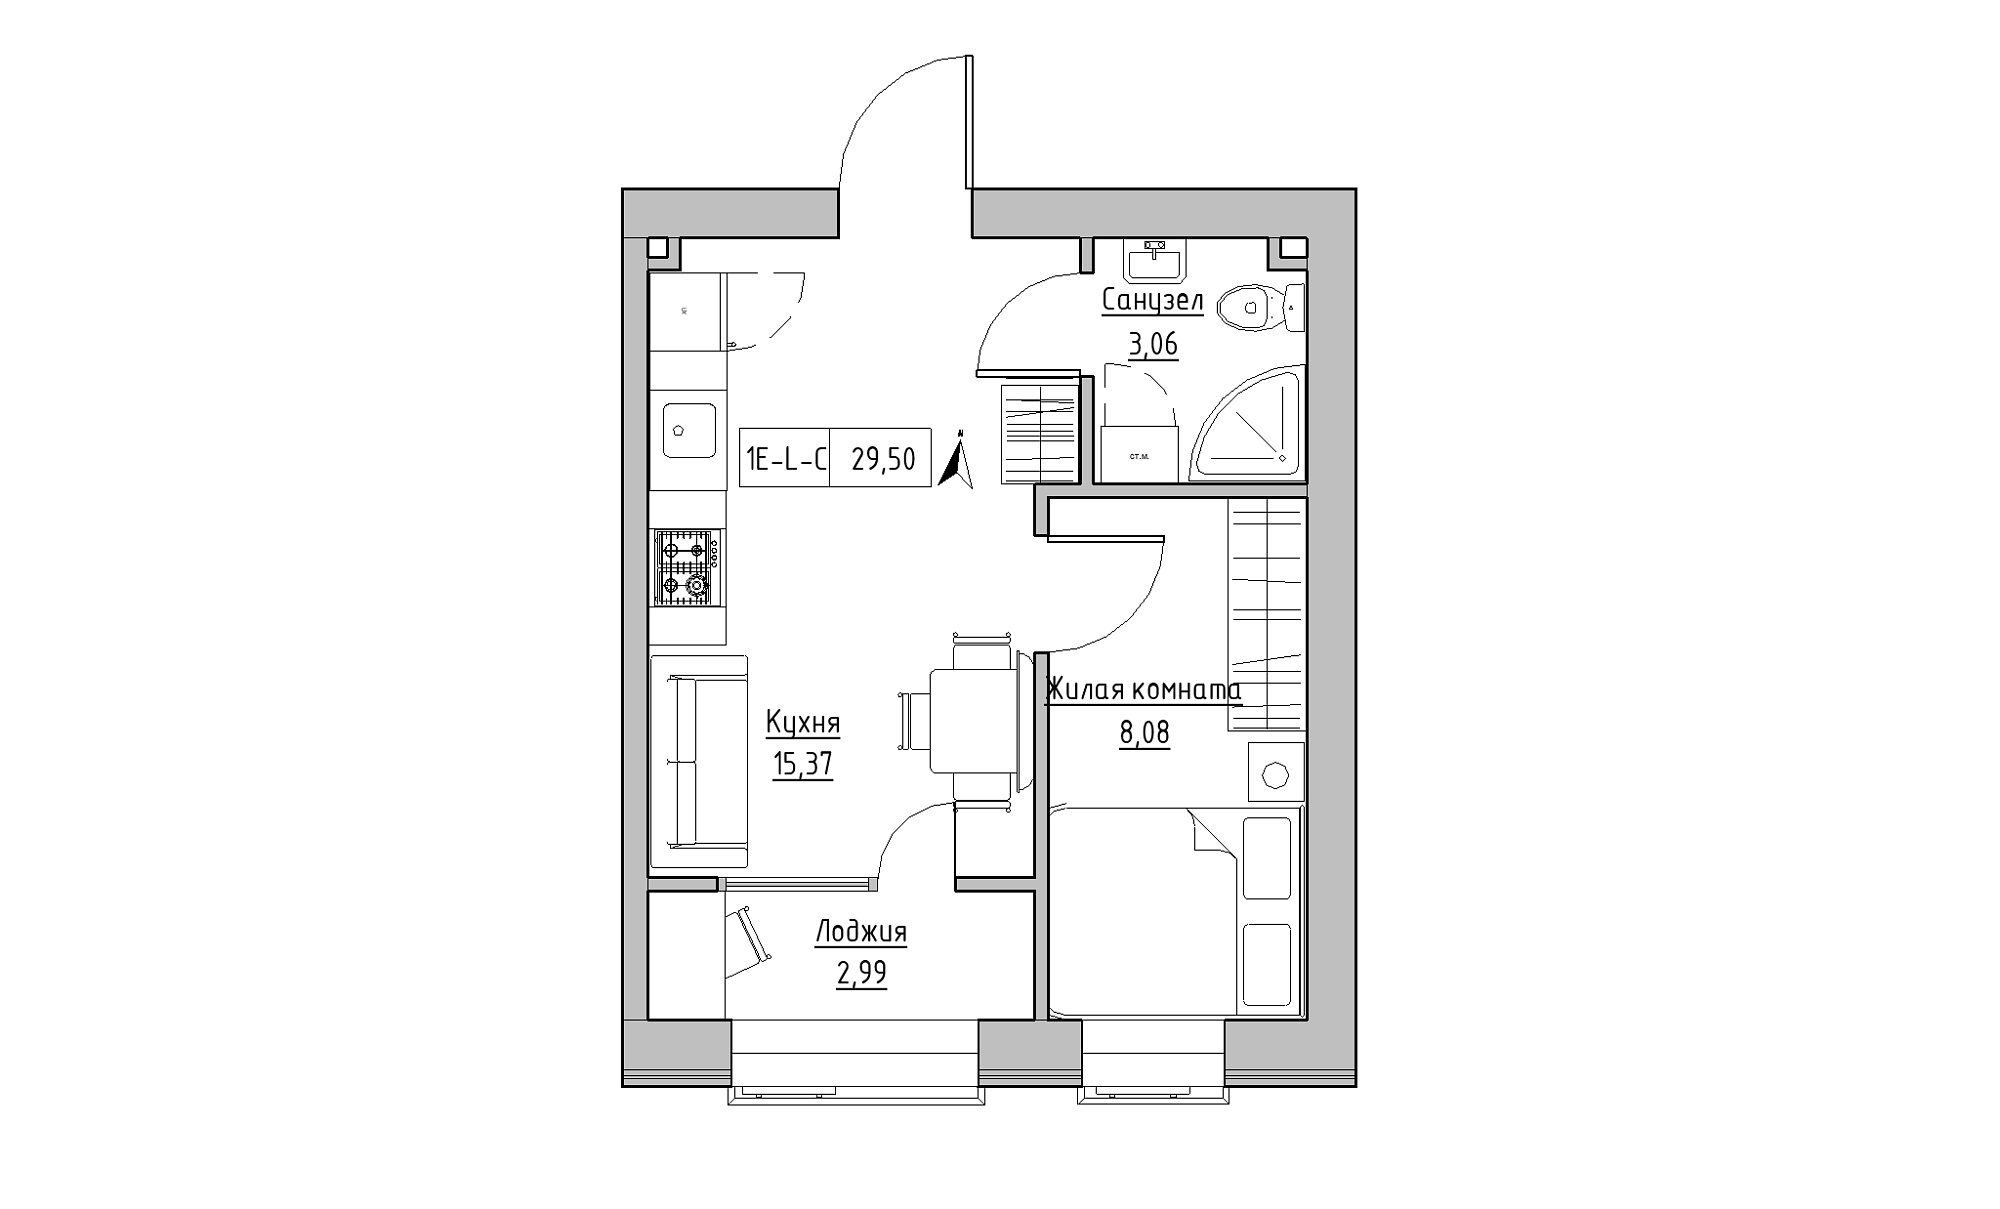 Планировка 1-к квартира площей 29.5м2, KS-016-03/0006.